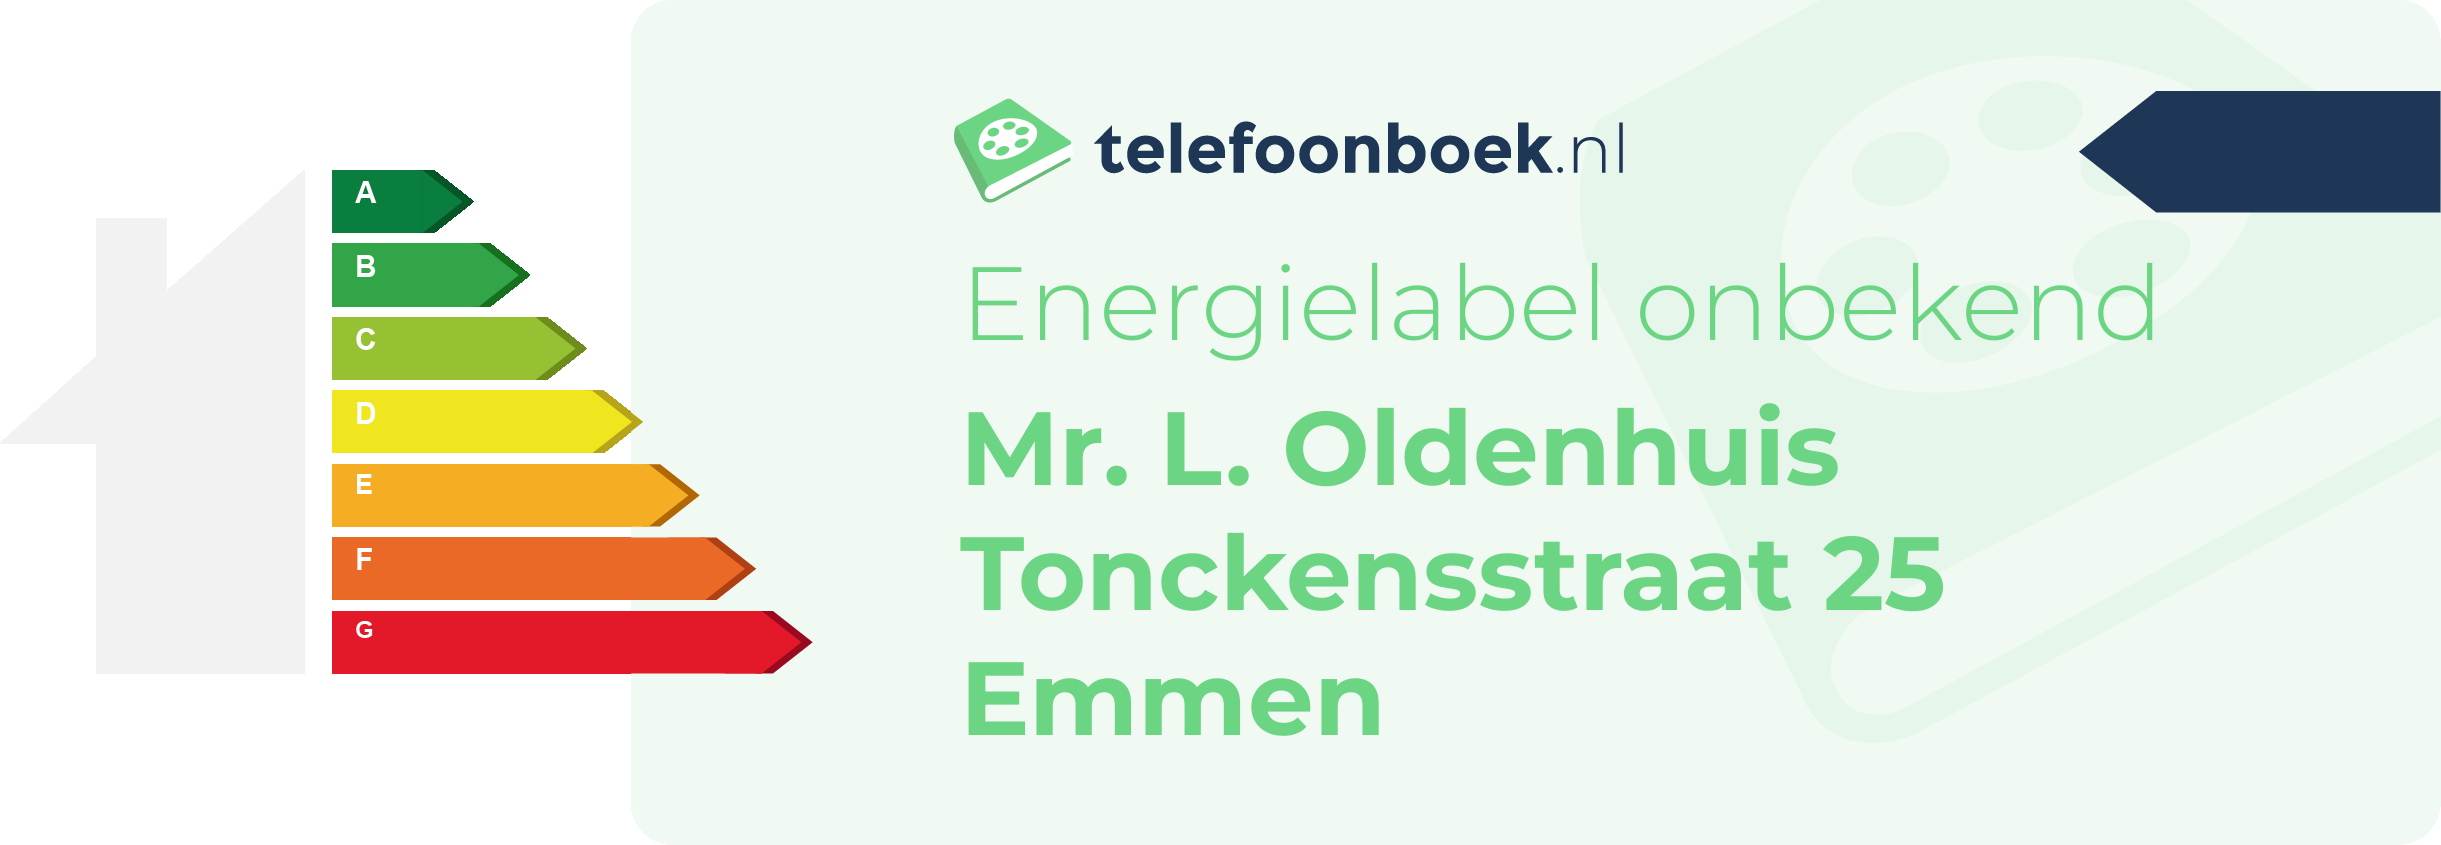 Energielabel Mr. L. Oldenhuis Tonckensstraat 25 Emmen